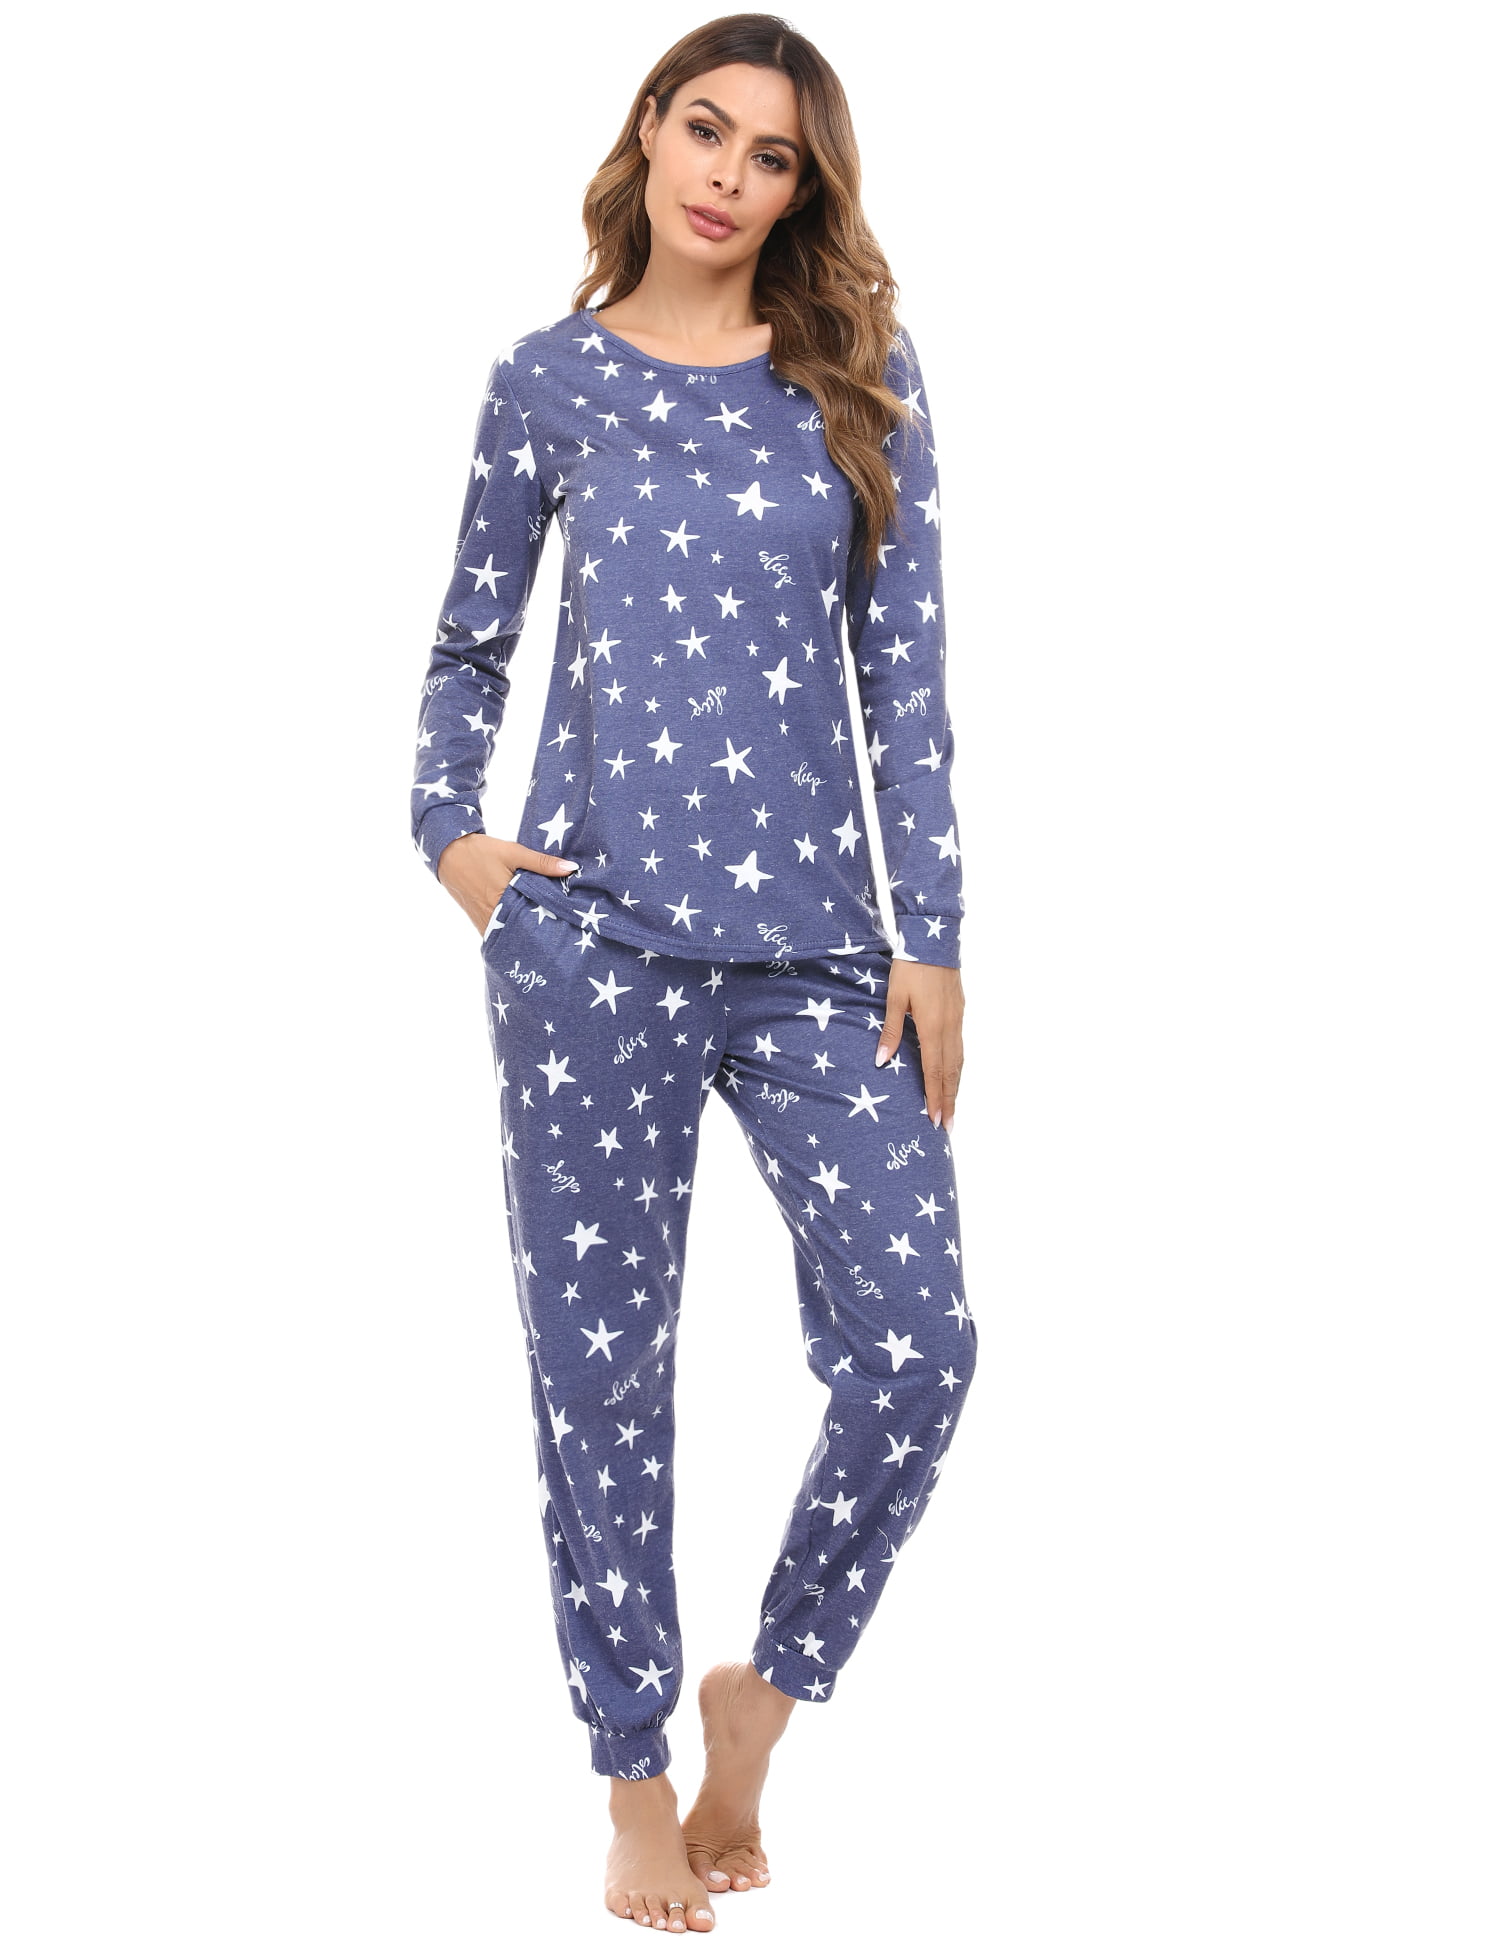 Irevial Women Pjs Pajama Set Cotton Loungewear Nightwear Sleepwear Short Sleeve Top & Long Bottoms Outfits 